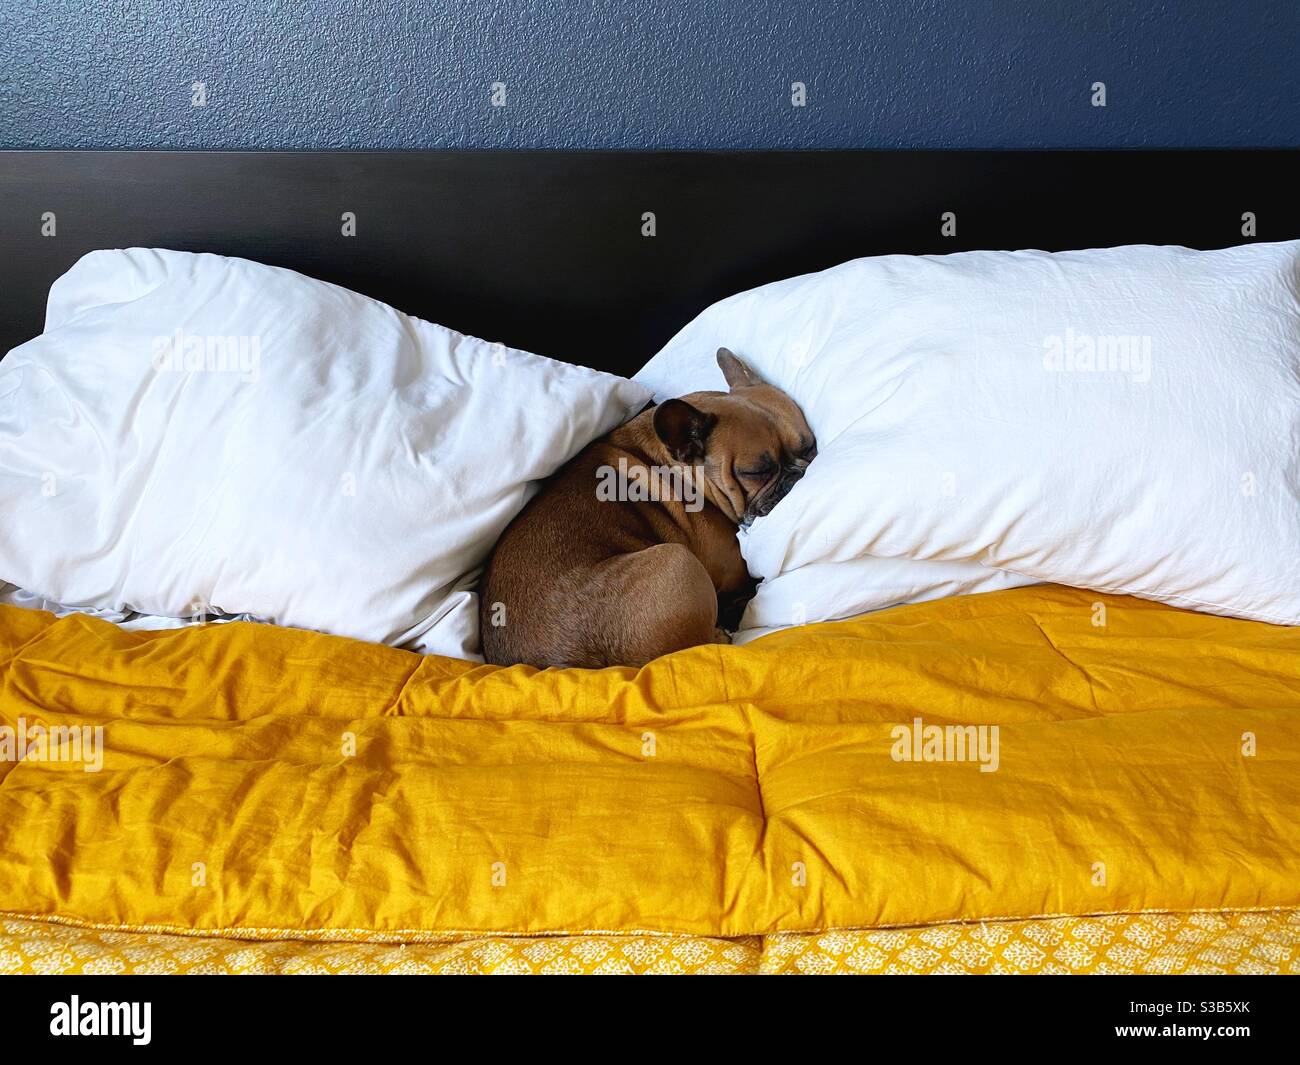 Un bulldog français dormant sur des oreillers sur un lit. Banque D'Images